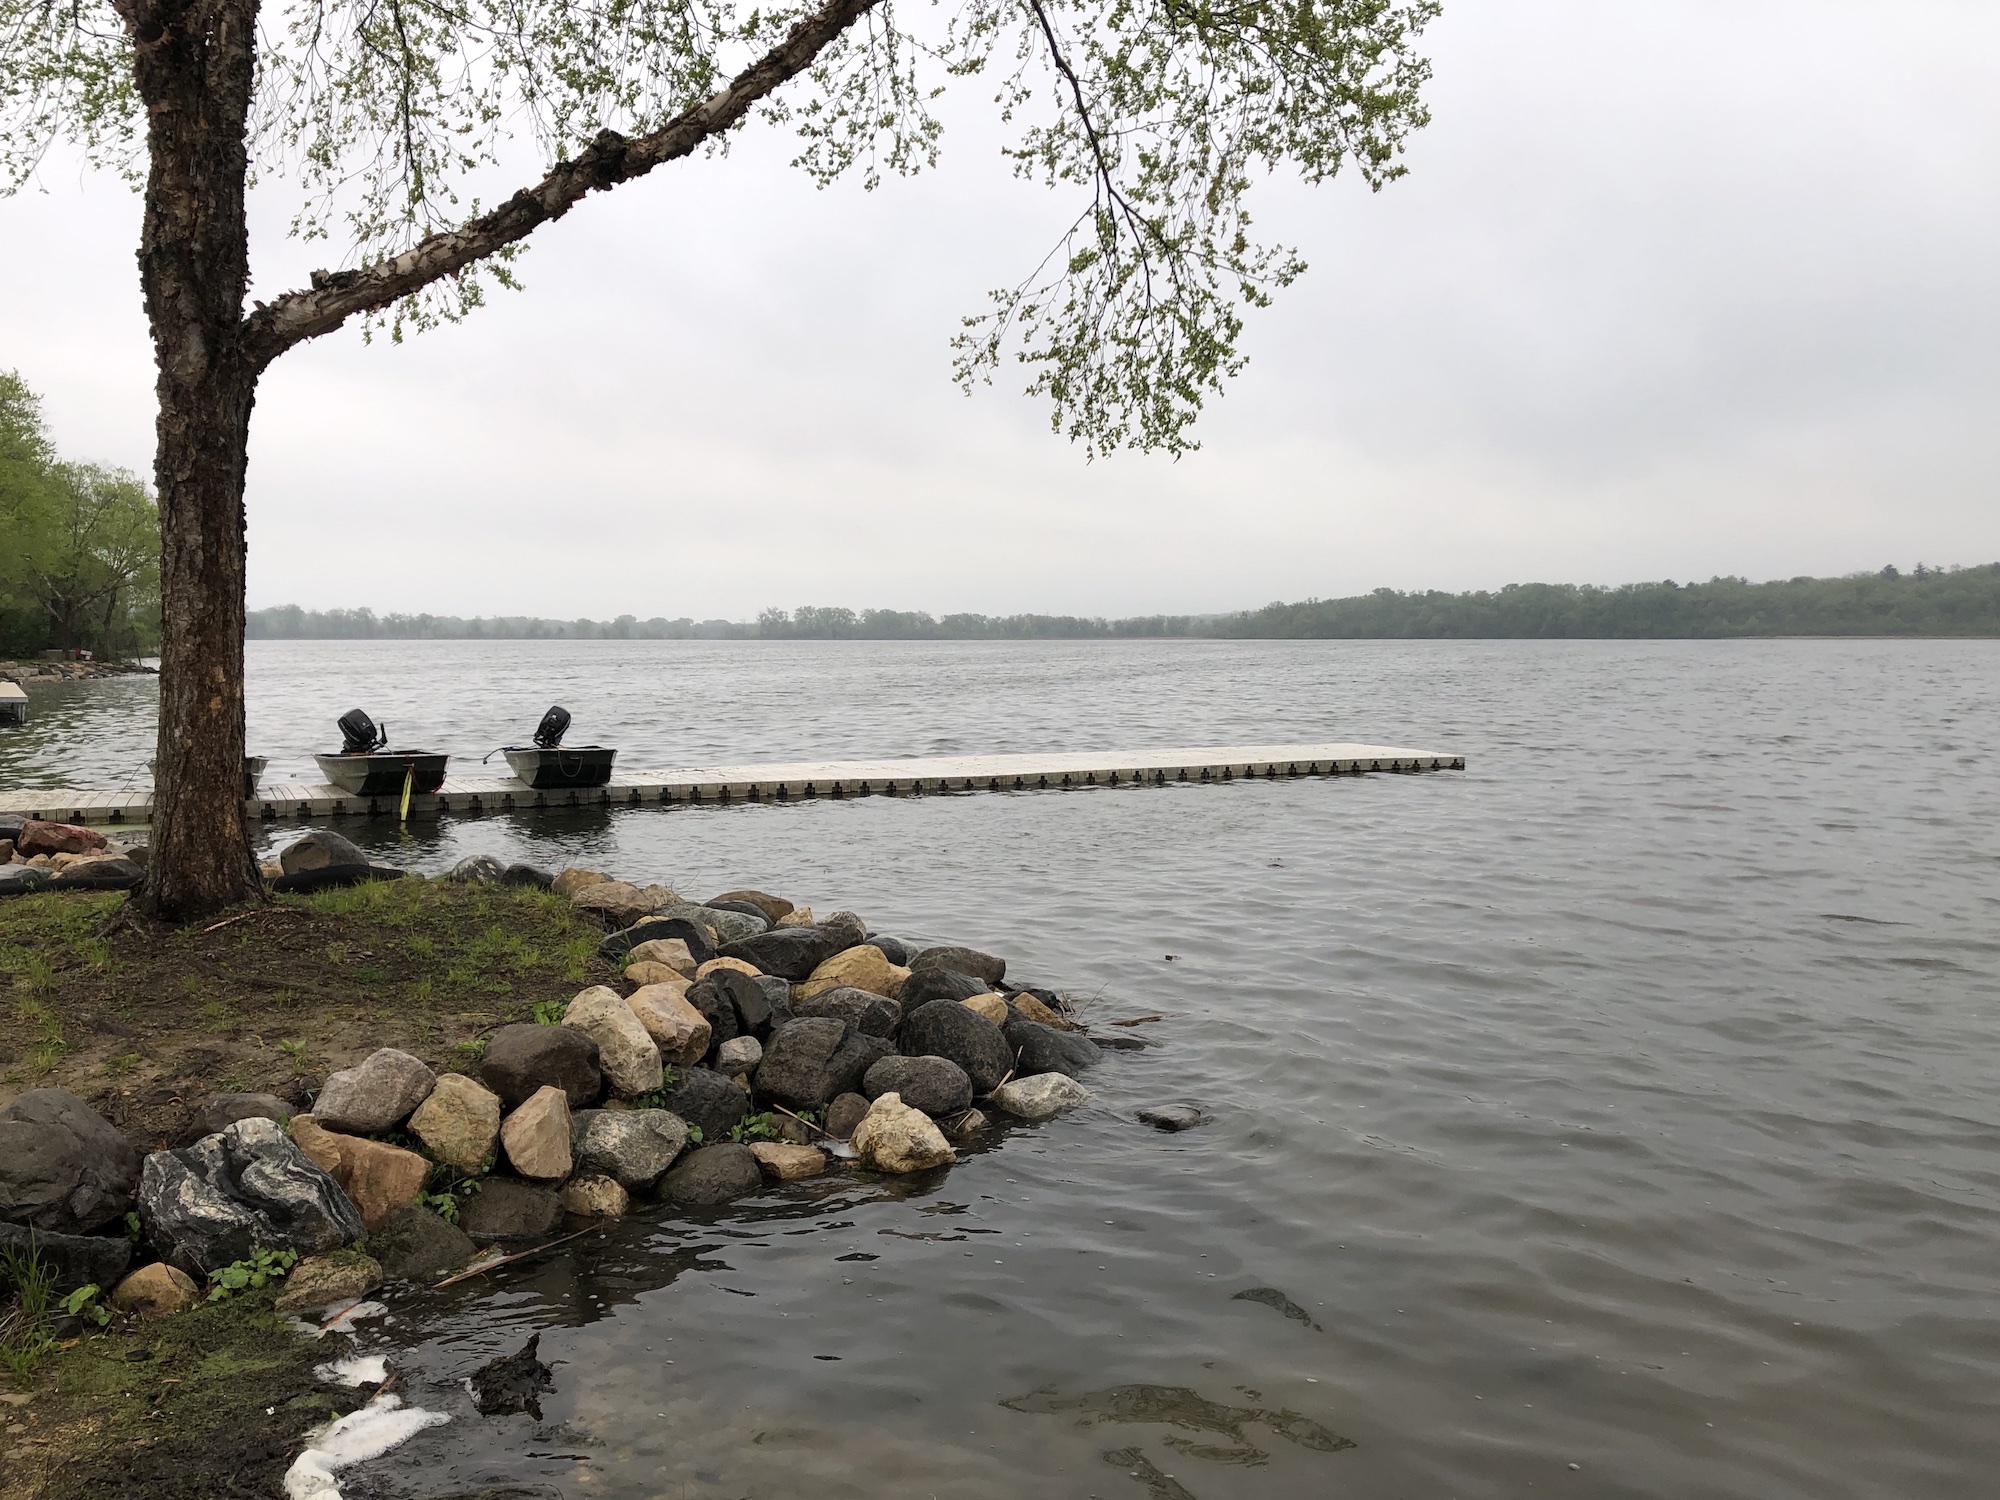 Lake Wingra on May 22, 2019.